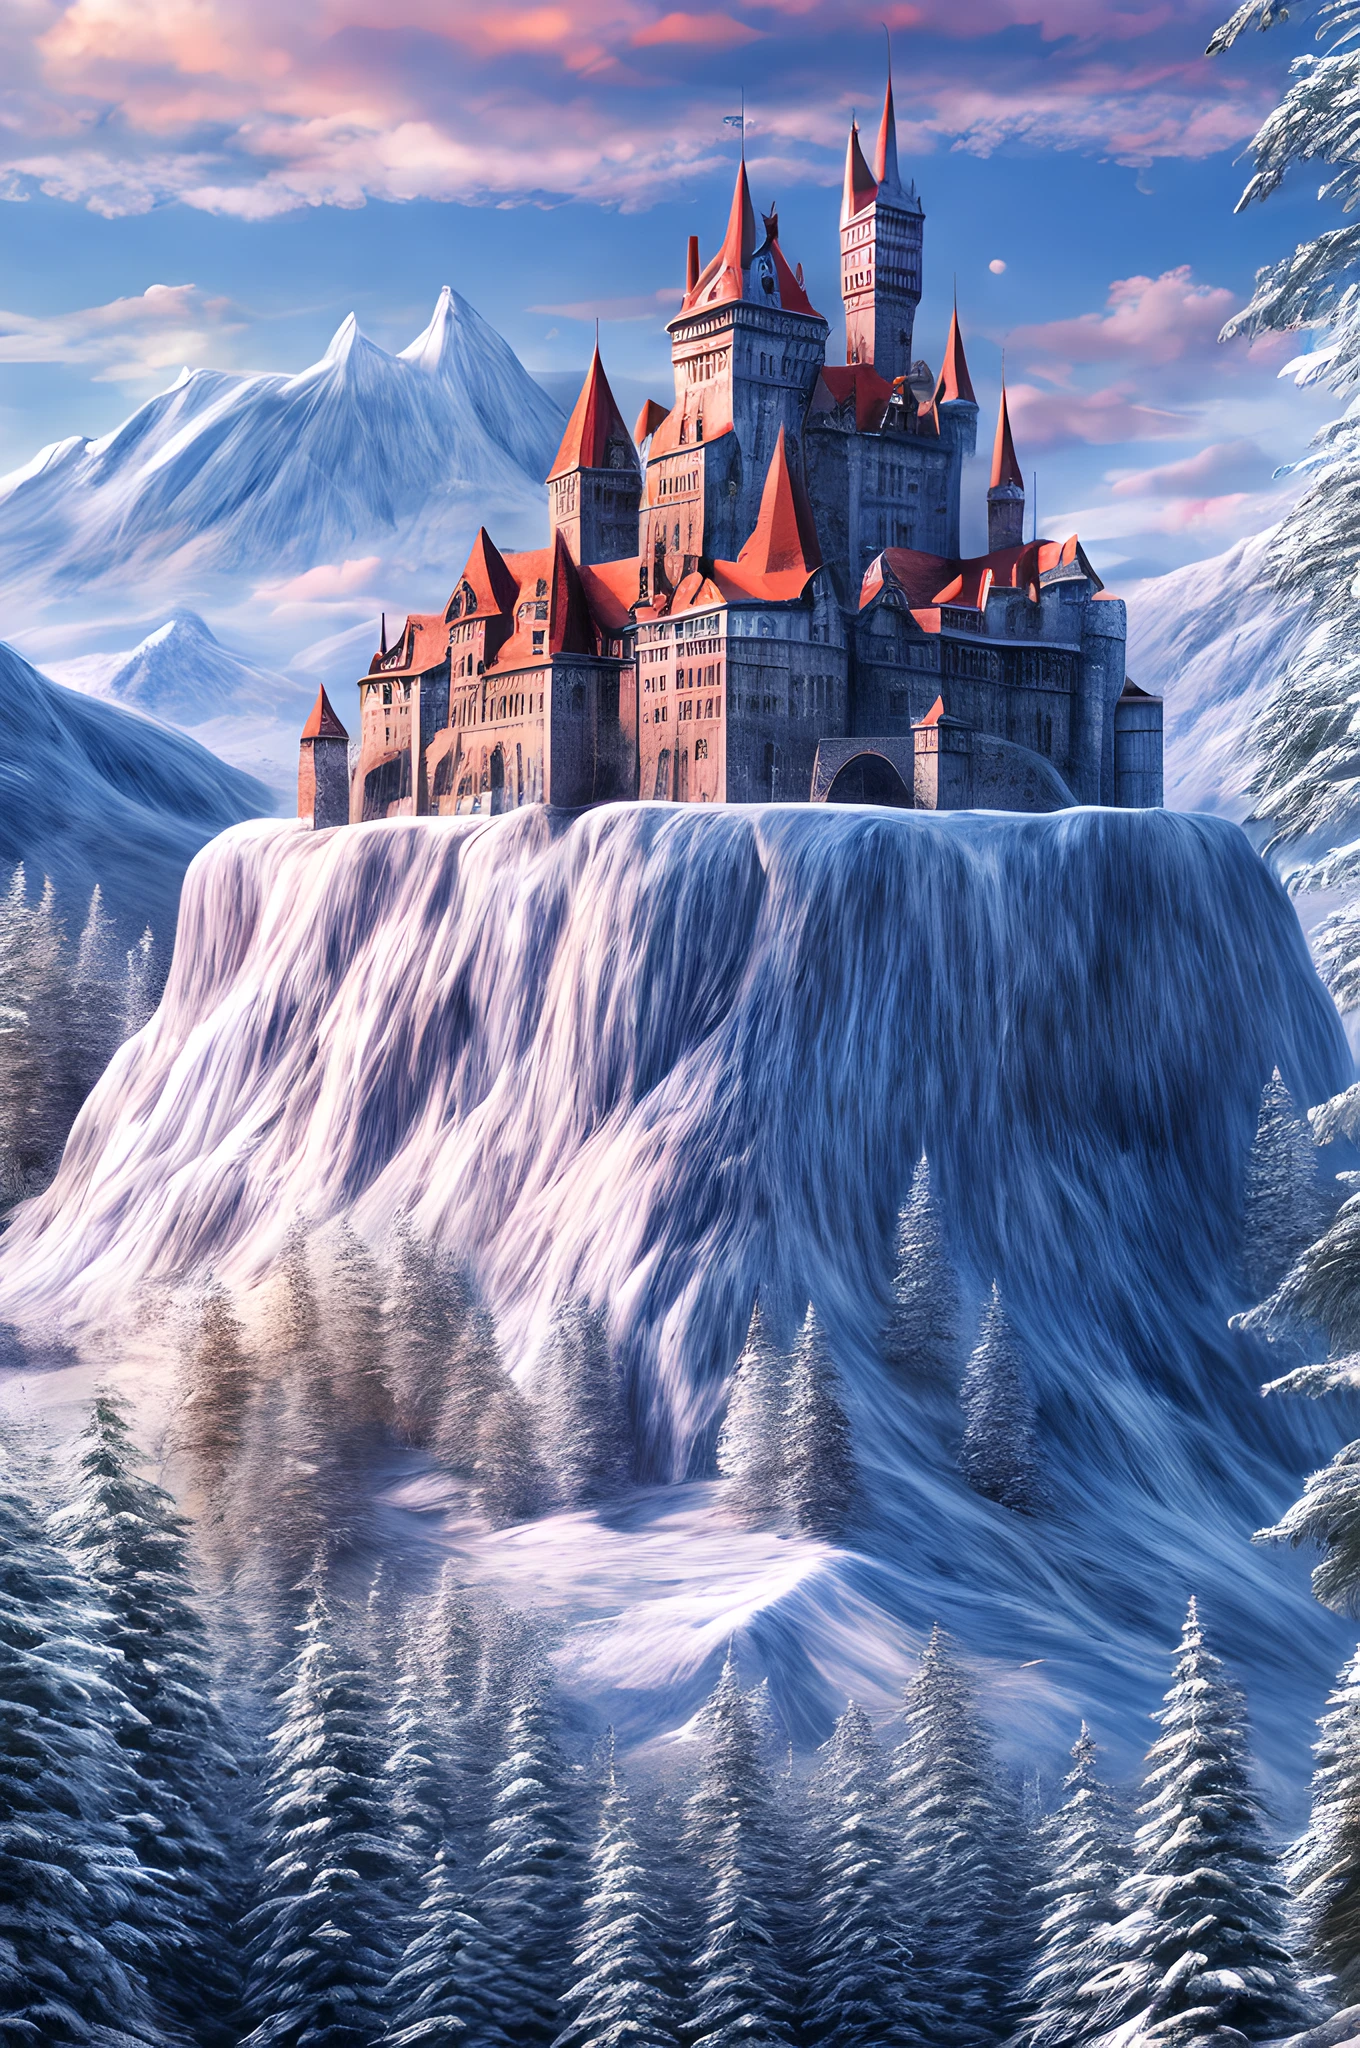 ภาพถ่ายพาโนรามาที่ได้รับรางวัลชนะเลิศ, เหมือนจริง, มีรายละเอียดมาก ของ a castle ทำ from [[น้ำแข็ง]] ทำ_ของ_น้ำแข็ง standing on the peak ของ a snowy mountain, an impressive best detailed castle ทำ from น้ำแข็ง (เหมือนจริง, มีรายละเอียดมาก), มีหอคอย, สะพาน, คูน้ำที่เต็มไปด้วยลาวา (เหมือนจริง, มีรายละเอียดมาก),  standing on top ของ a snowy mountain (ผลงานชิ้นเอก, มีรายละเอียดมาก, คุณภาพดีที่สุด), มีต้นสน, แสงพระอาทิตย์ตก, มีเมฆบางส่วนอยู่ในอากาศ,  พื้นหลังเทือกเขาอัลไพน์, สมจริงที่สุด, รายละเอียดที่ดีที่สุด, คุณภาพดีที่สุด, 16ก, [มีรายละเอียดมาก], ผลงานชิ้นเอก, คุณภาพดีที่สุด, (มีรายละเอียดมาก), ถ่ายภาพมุมกว้างพิเศษ, ความสมจริงด้วยแสง, depth ของ field,